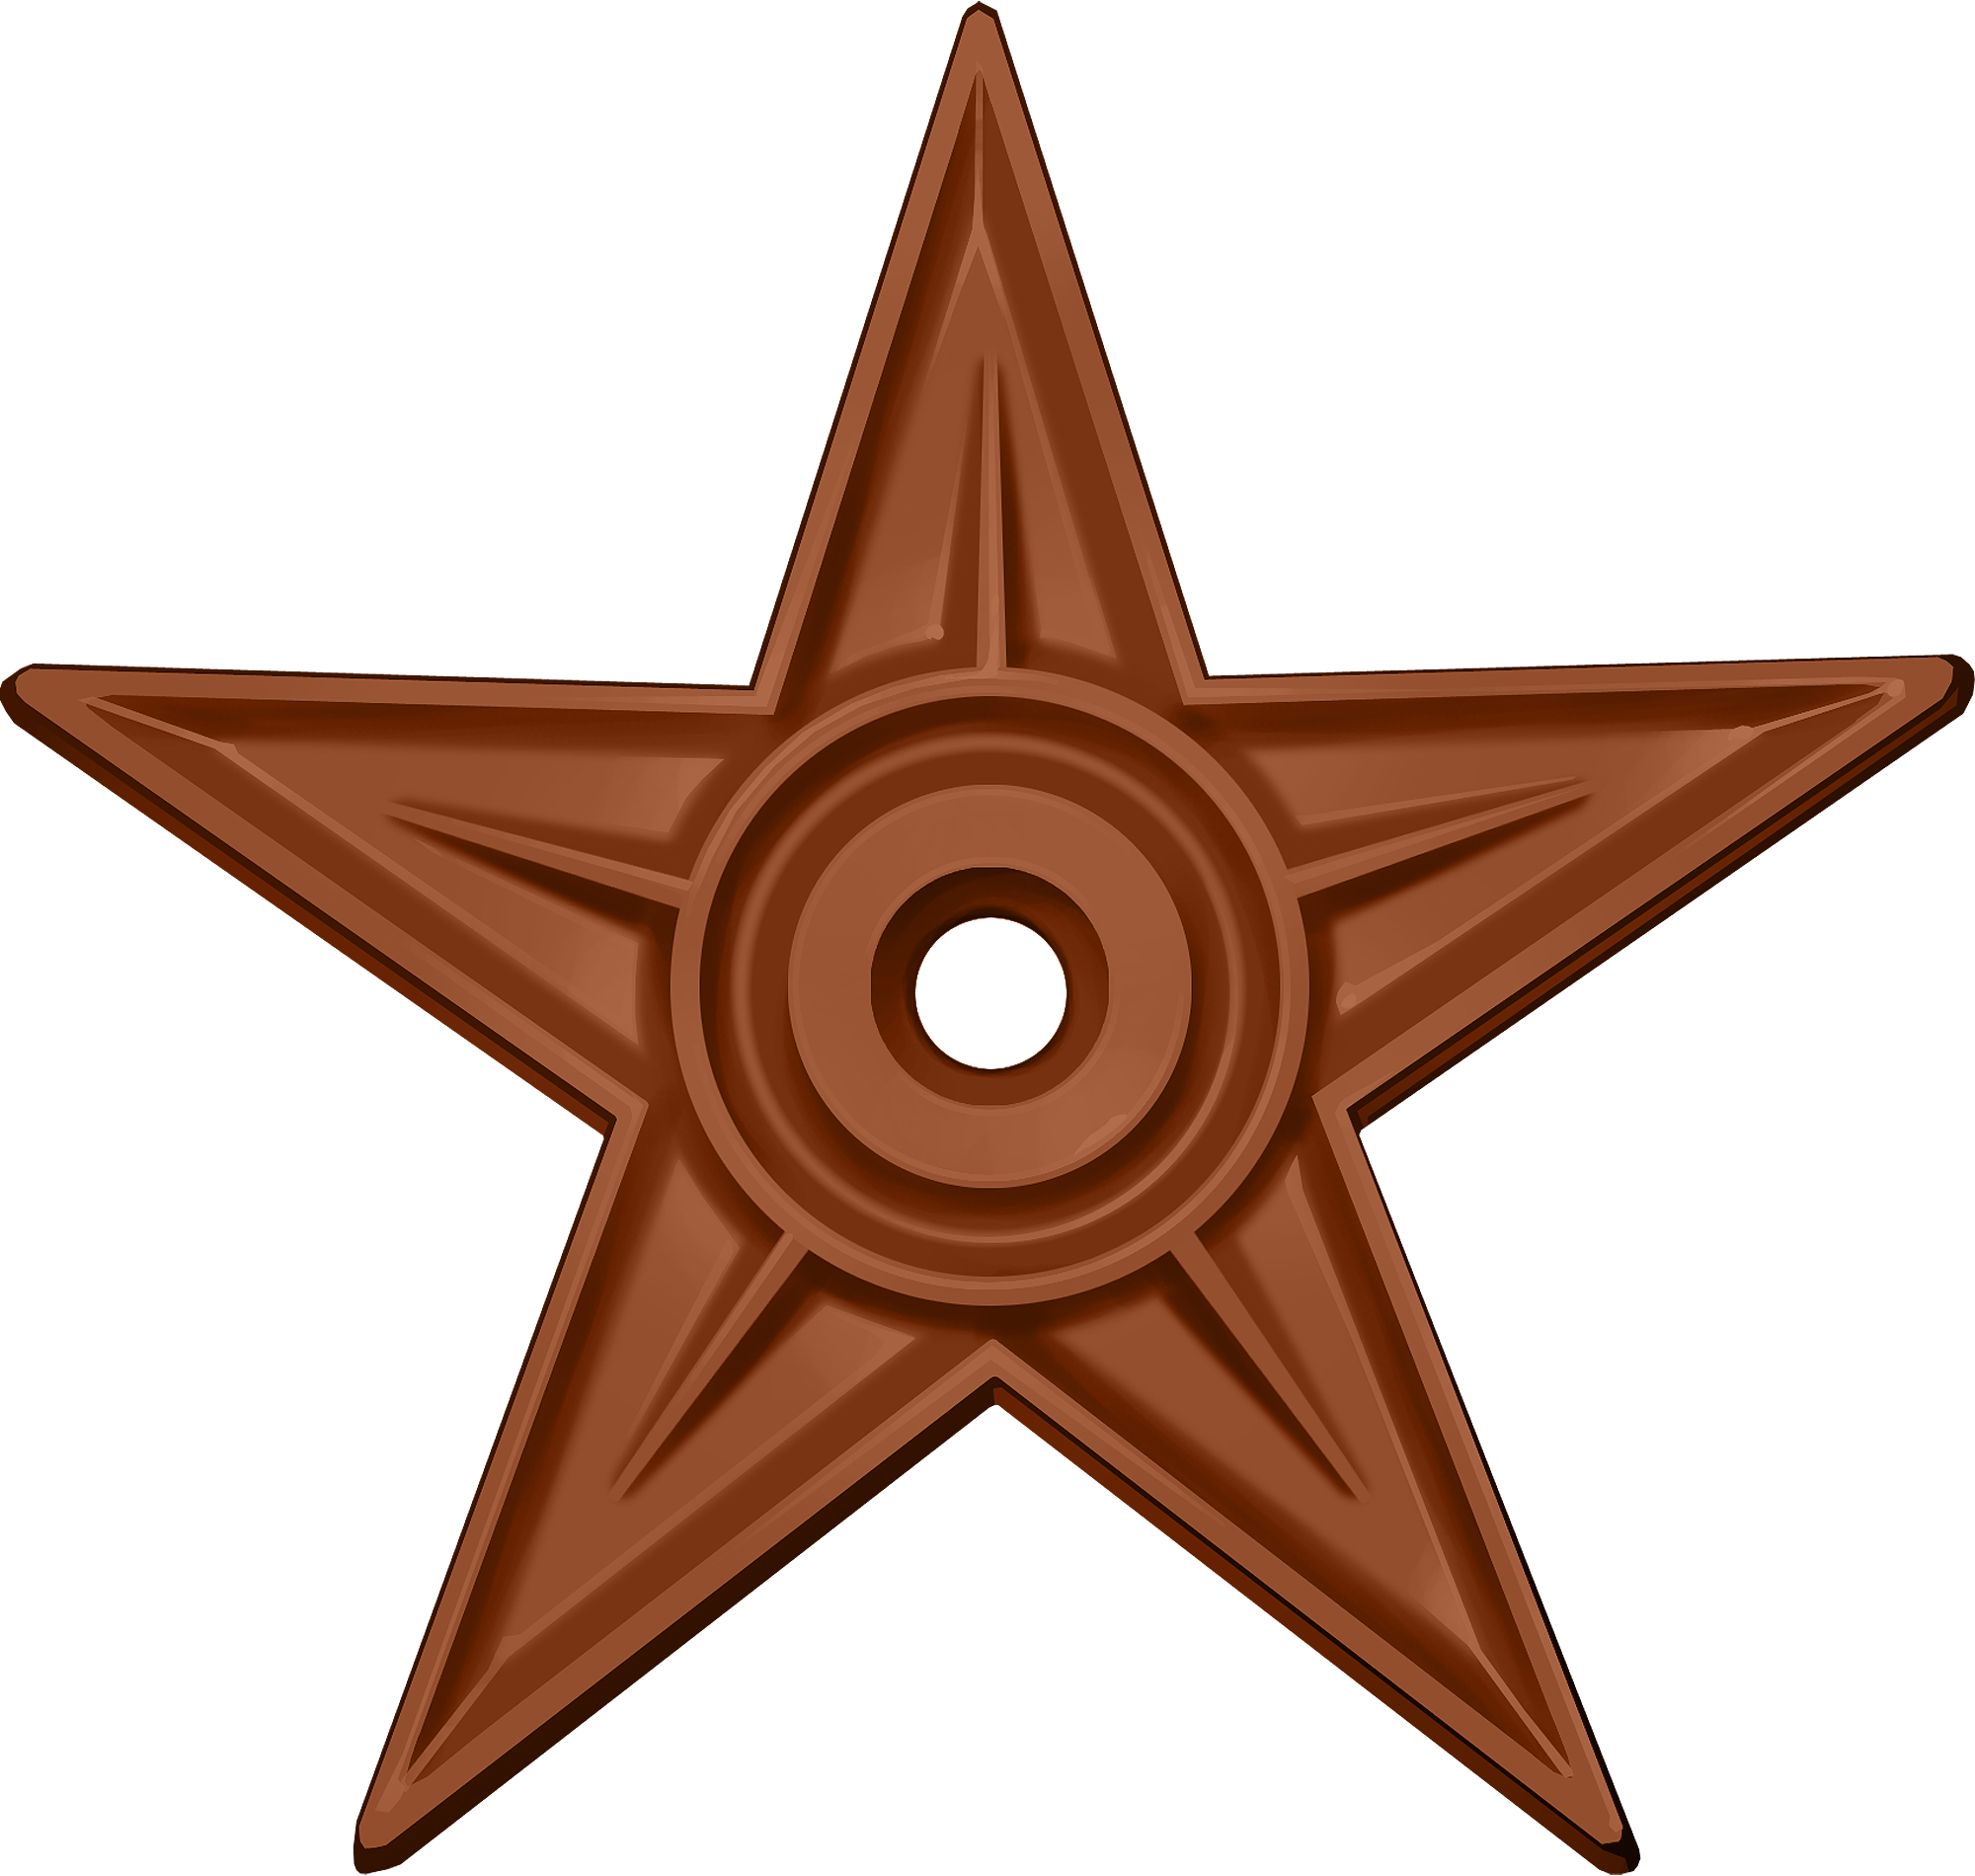 Орден #1 «За заслуги», присвоен 5 января 2012 участником Saint Johann за «За заслуги перед Википедией автору 714 статей, из которых две избранные и одна хорошая :)»